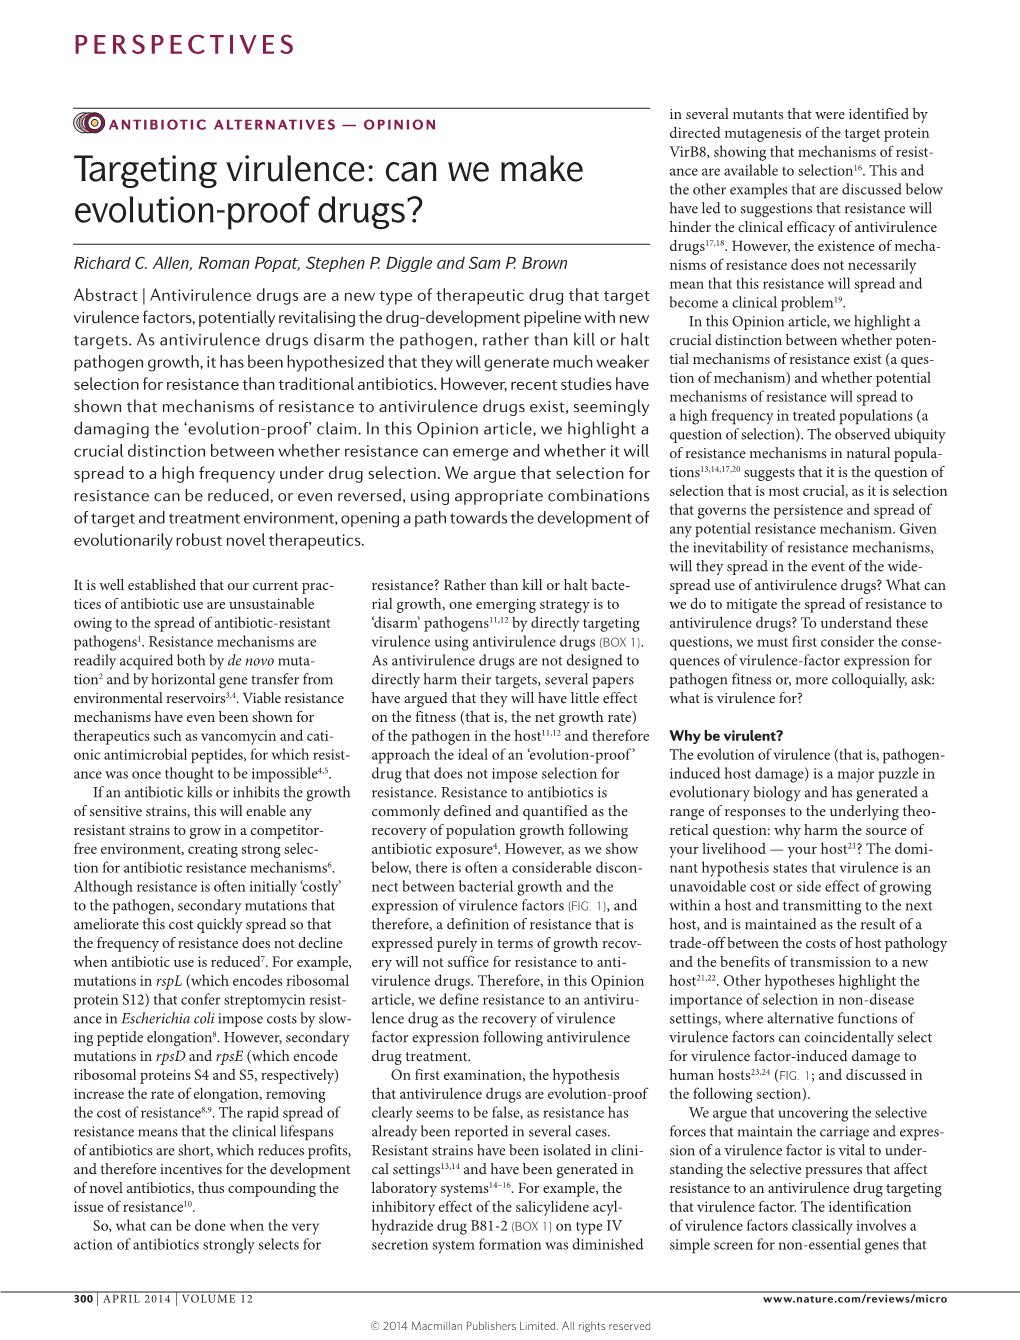 Targeting Virulence: Can We Make Evolution-Proof Drugs?